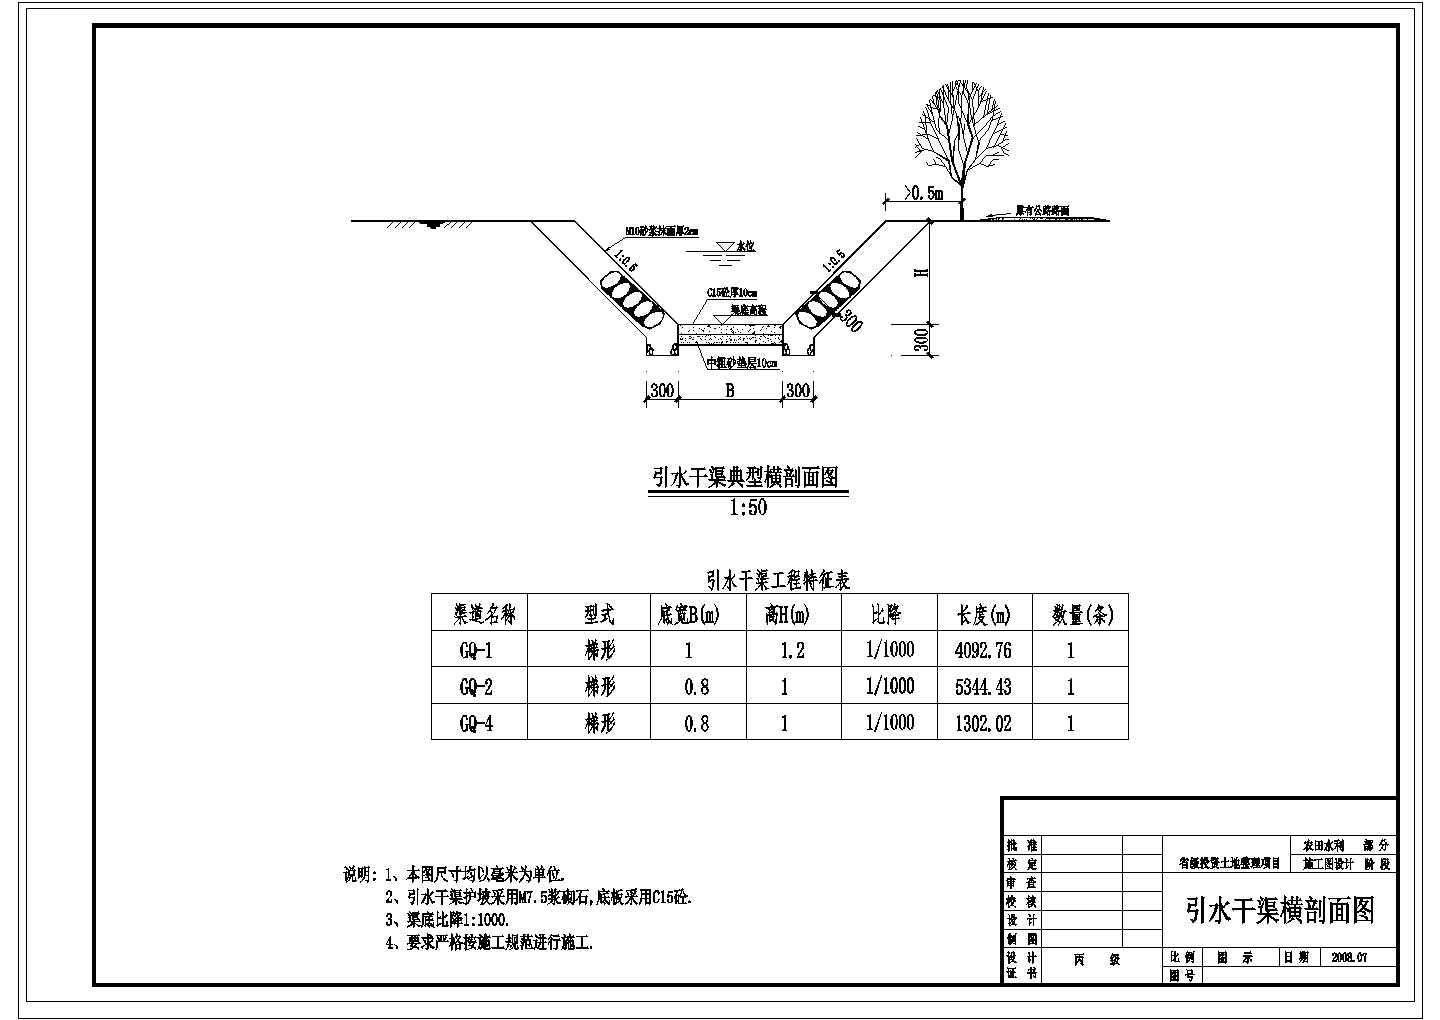 【广东】省级投资土地整理项目施工图设计（丘陵山区）